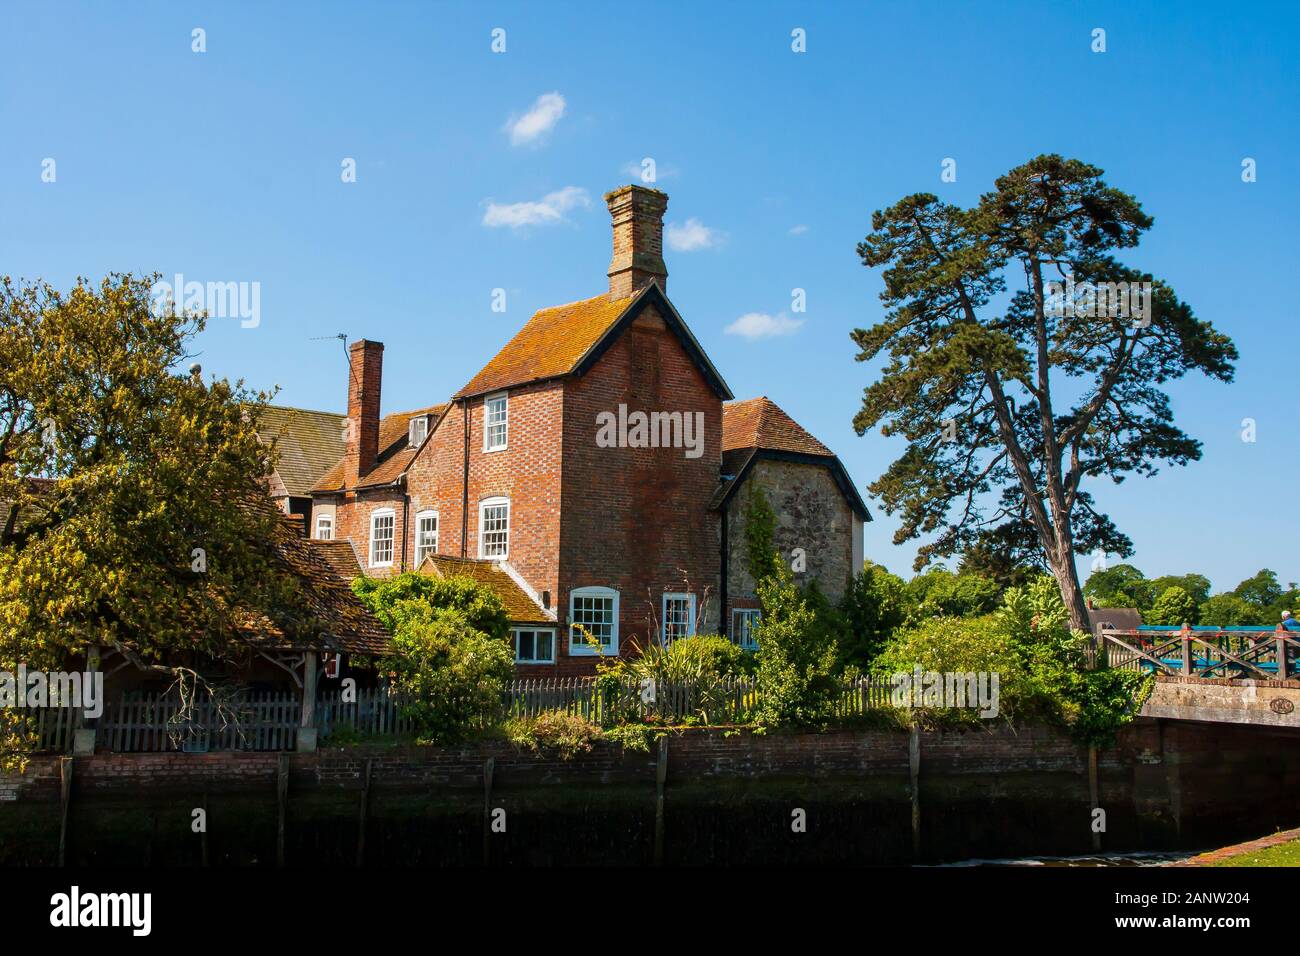 10 juin 2015 Un bel exemple d'architecture élisabéthaine Tudor - à côté de la rivière Beaulieu à Beaulieu Village Hampshire Angleterre Banque D'Images